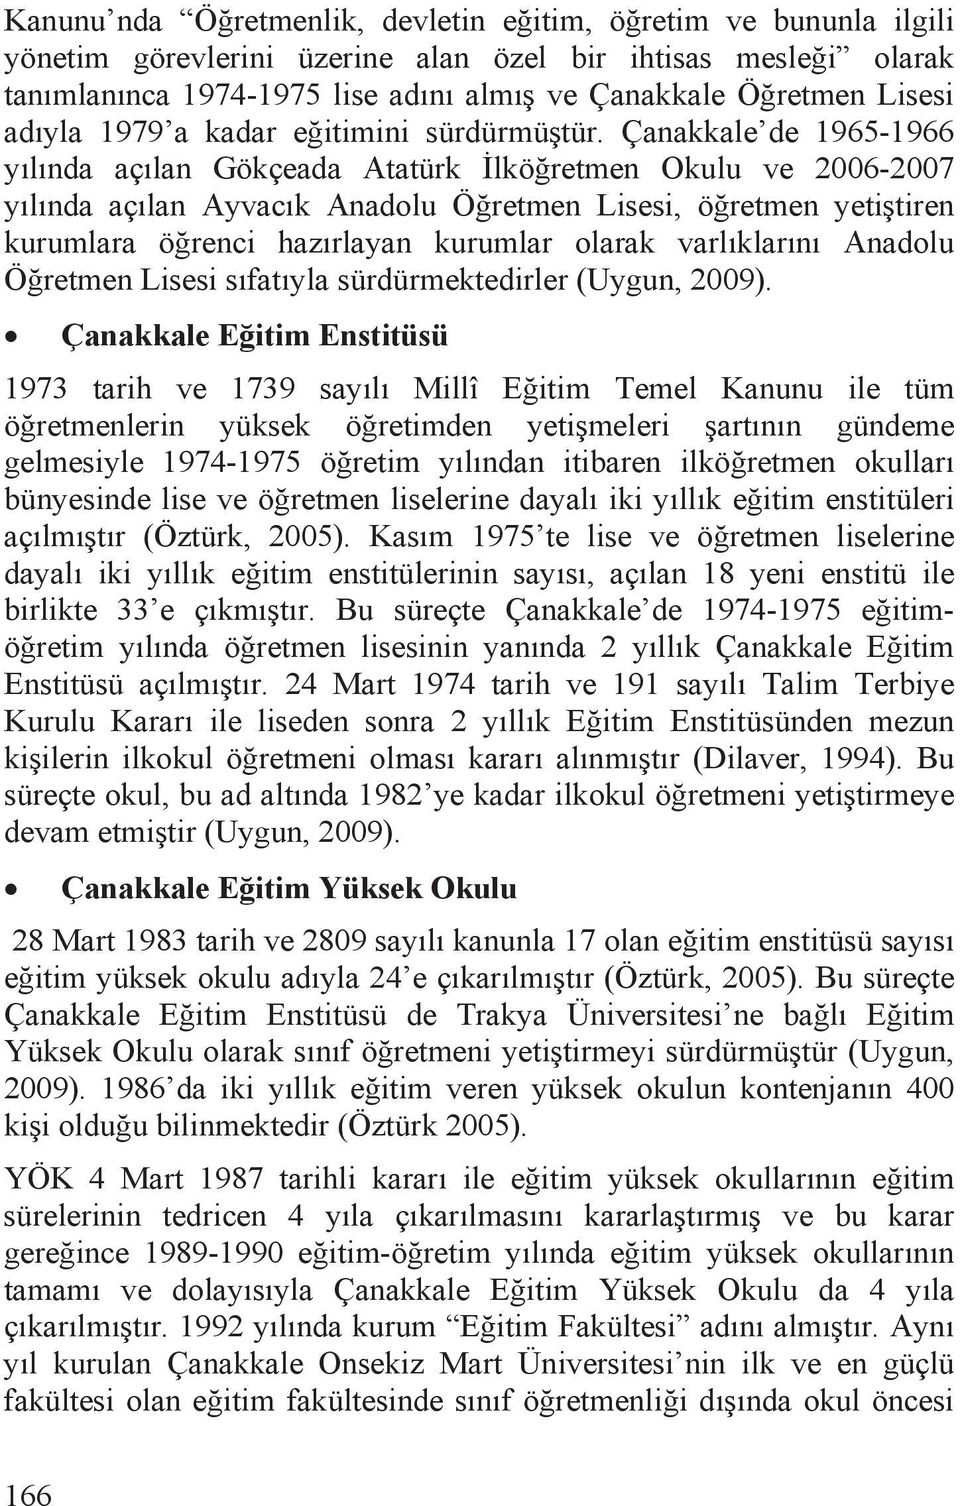 Çanakkale de 1965-1966 yõlõnda açõlan Gökçeada Atatürk lköretmen Okulu ve 2006-2007 yõlõnda açõlan Ayvacõk Anadolu Öretmen Lisesi, öretmen yetitiren kurumlara örenci hazõrlayan kurumlar olarak